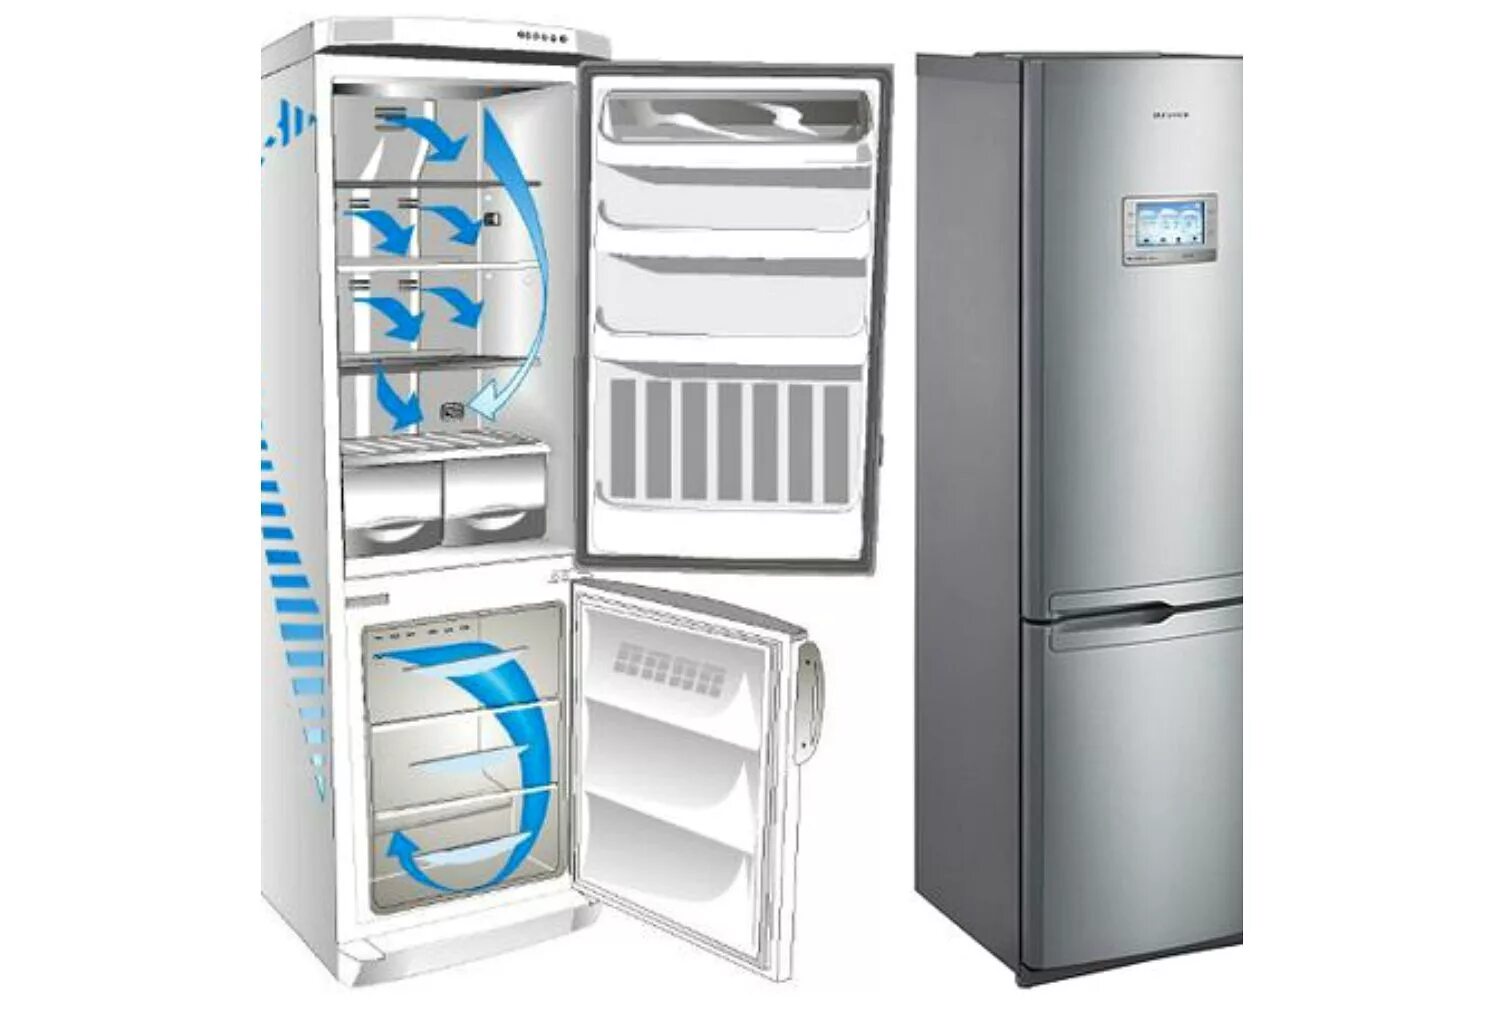 Атлант ноу Фрост. Холодильник eigen Stark-rf32. LG холодильник двухкамерный no Frost. Система ноу Фрост в холодильнике. Рейтинг холодильников цена качество ноу фрост двухкамерный